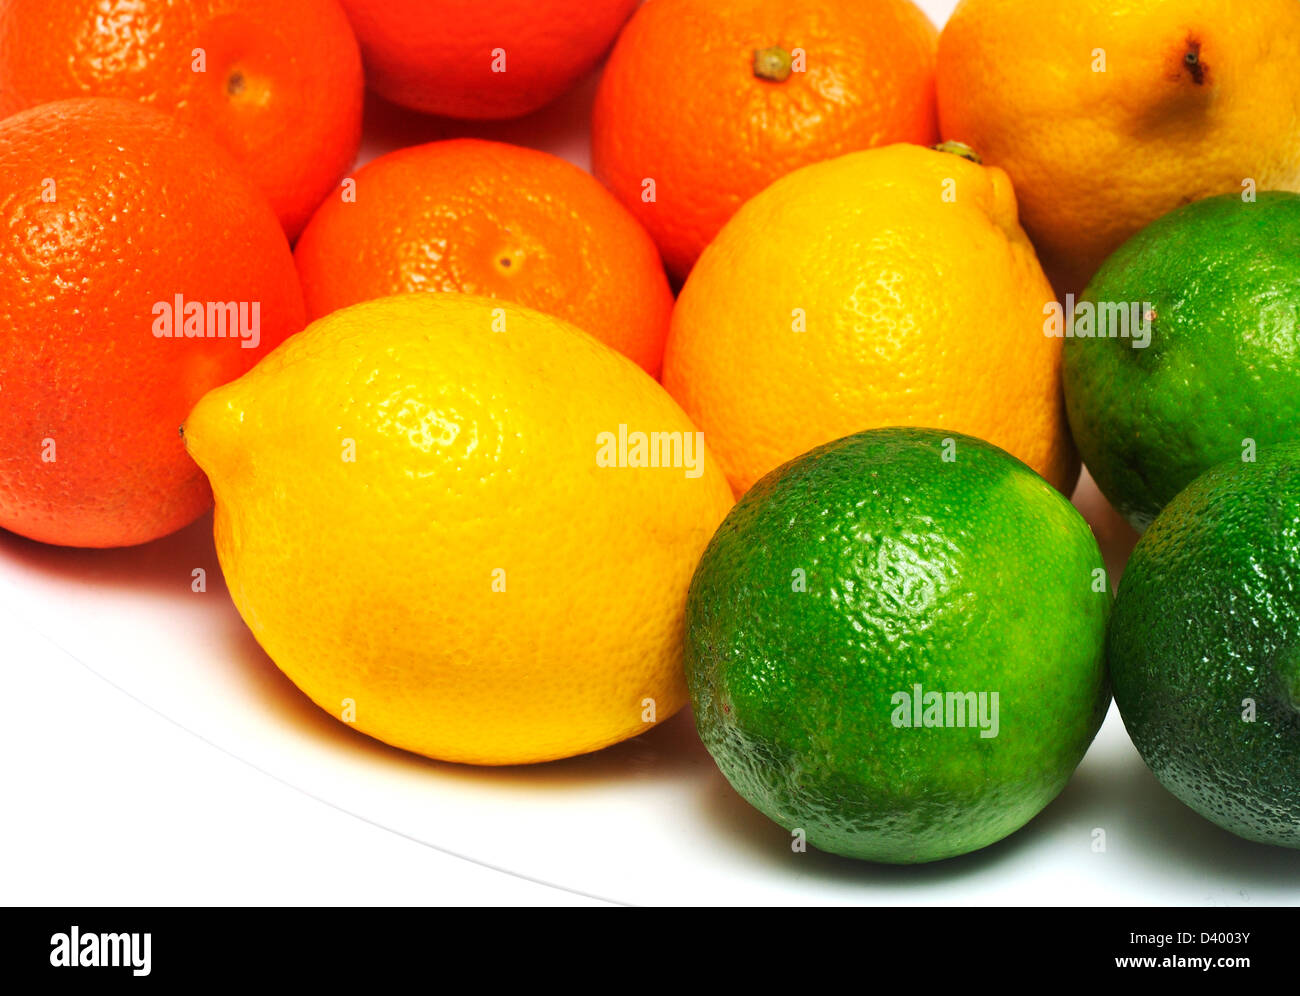 Mandarinas, limones y limas en un tazón. Foto de stock